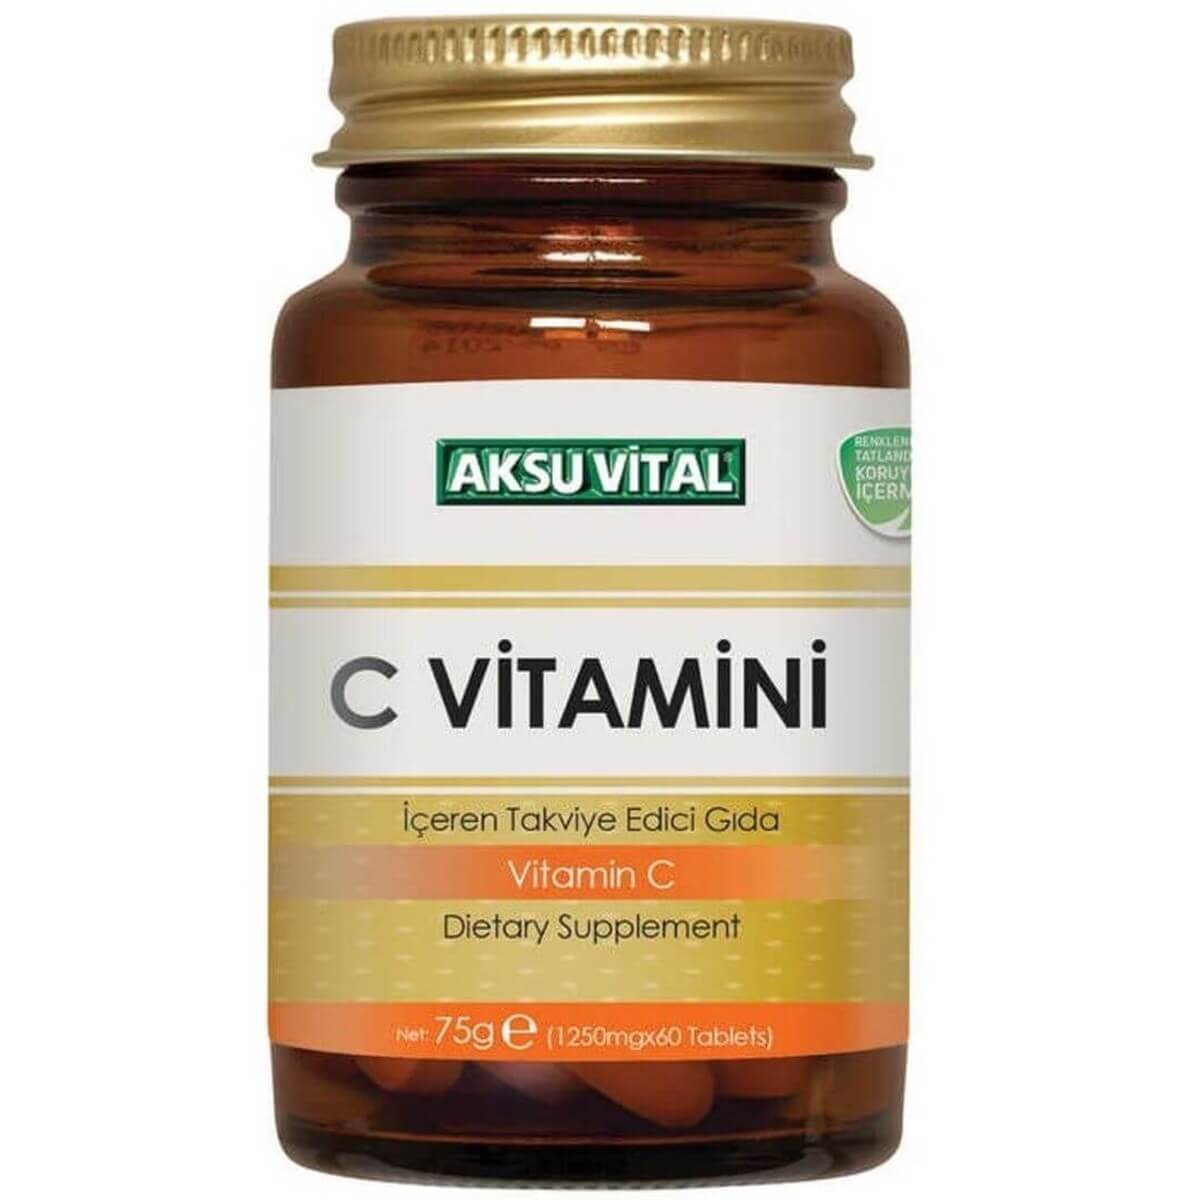 Aksu Vital C Vitamini 1250mg 60 Tablet